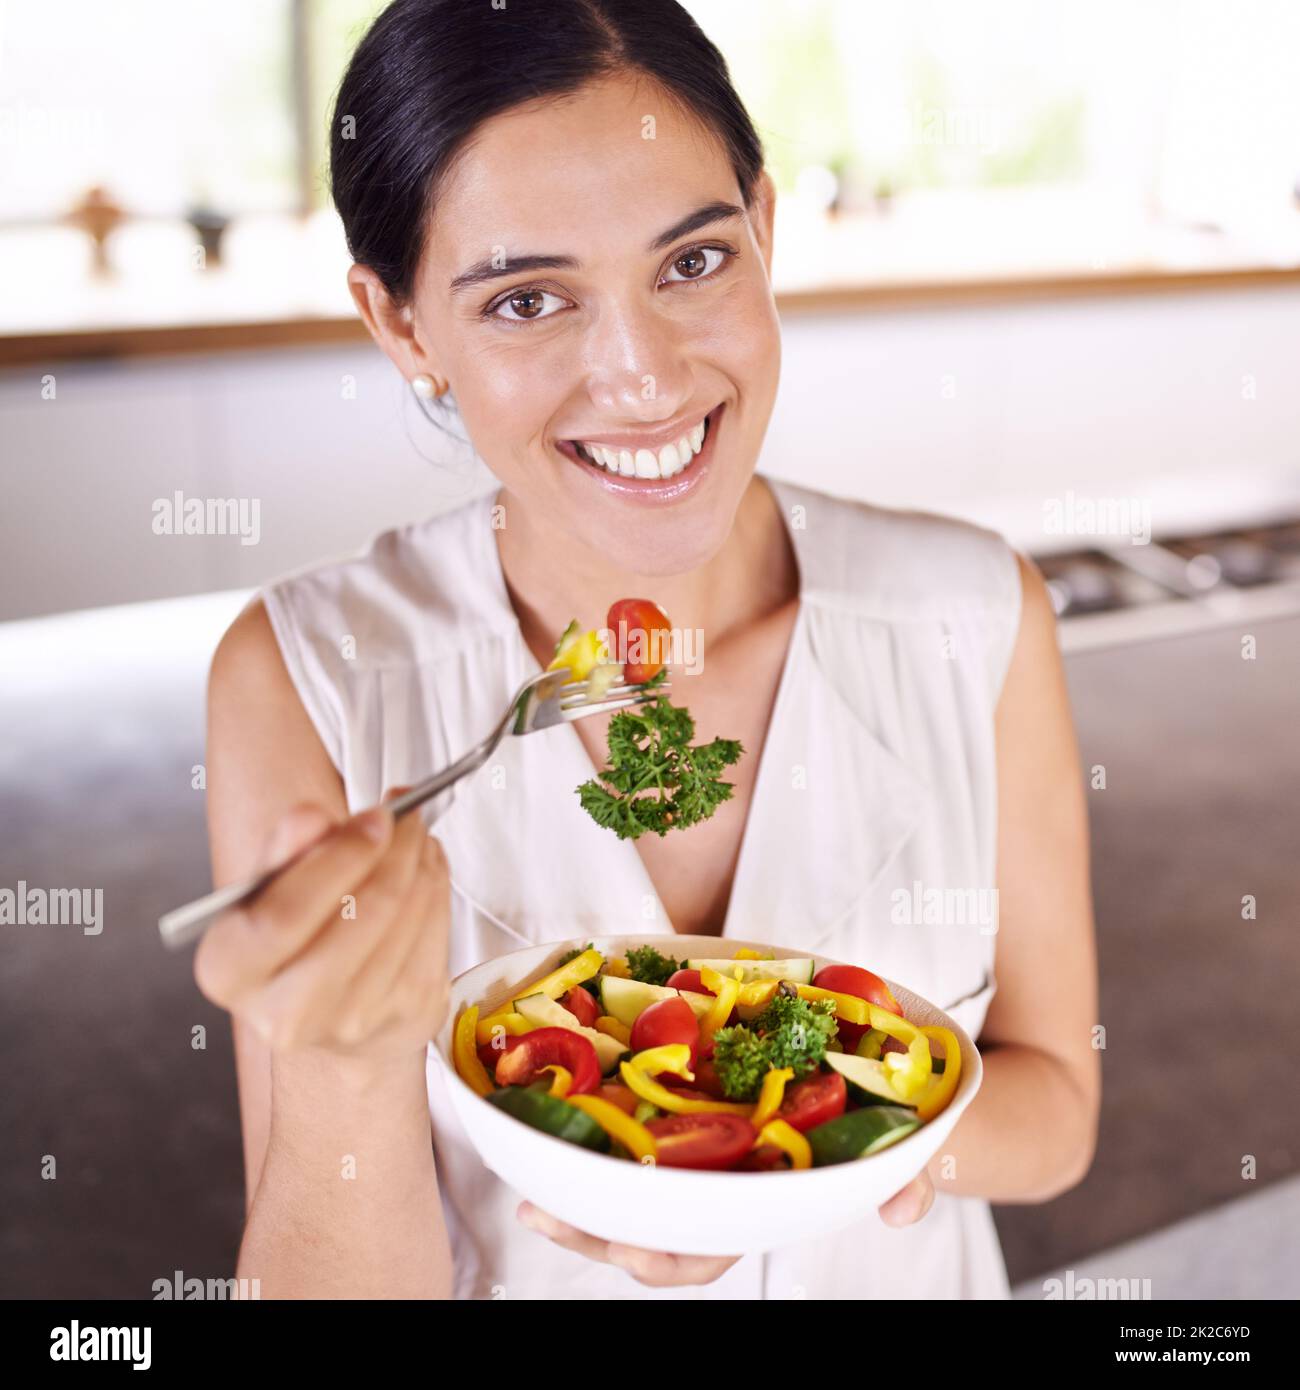 Speise sei deine Medizin, und Medizin sei deine Speise. Junge Frau genießt einen Salat, während sie in ihrer Küche steht. Stockfoto